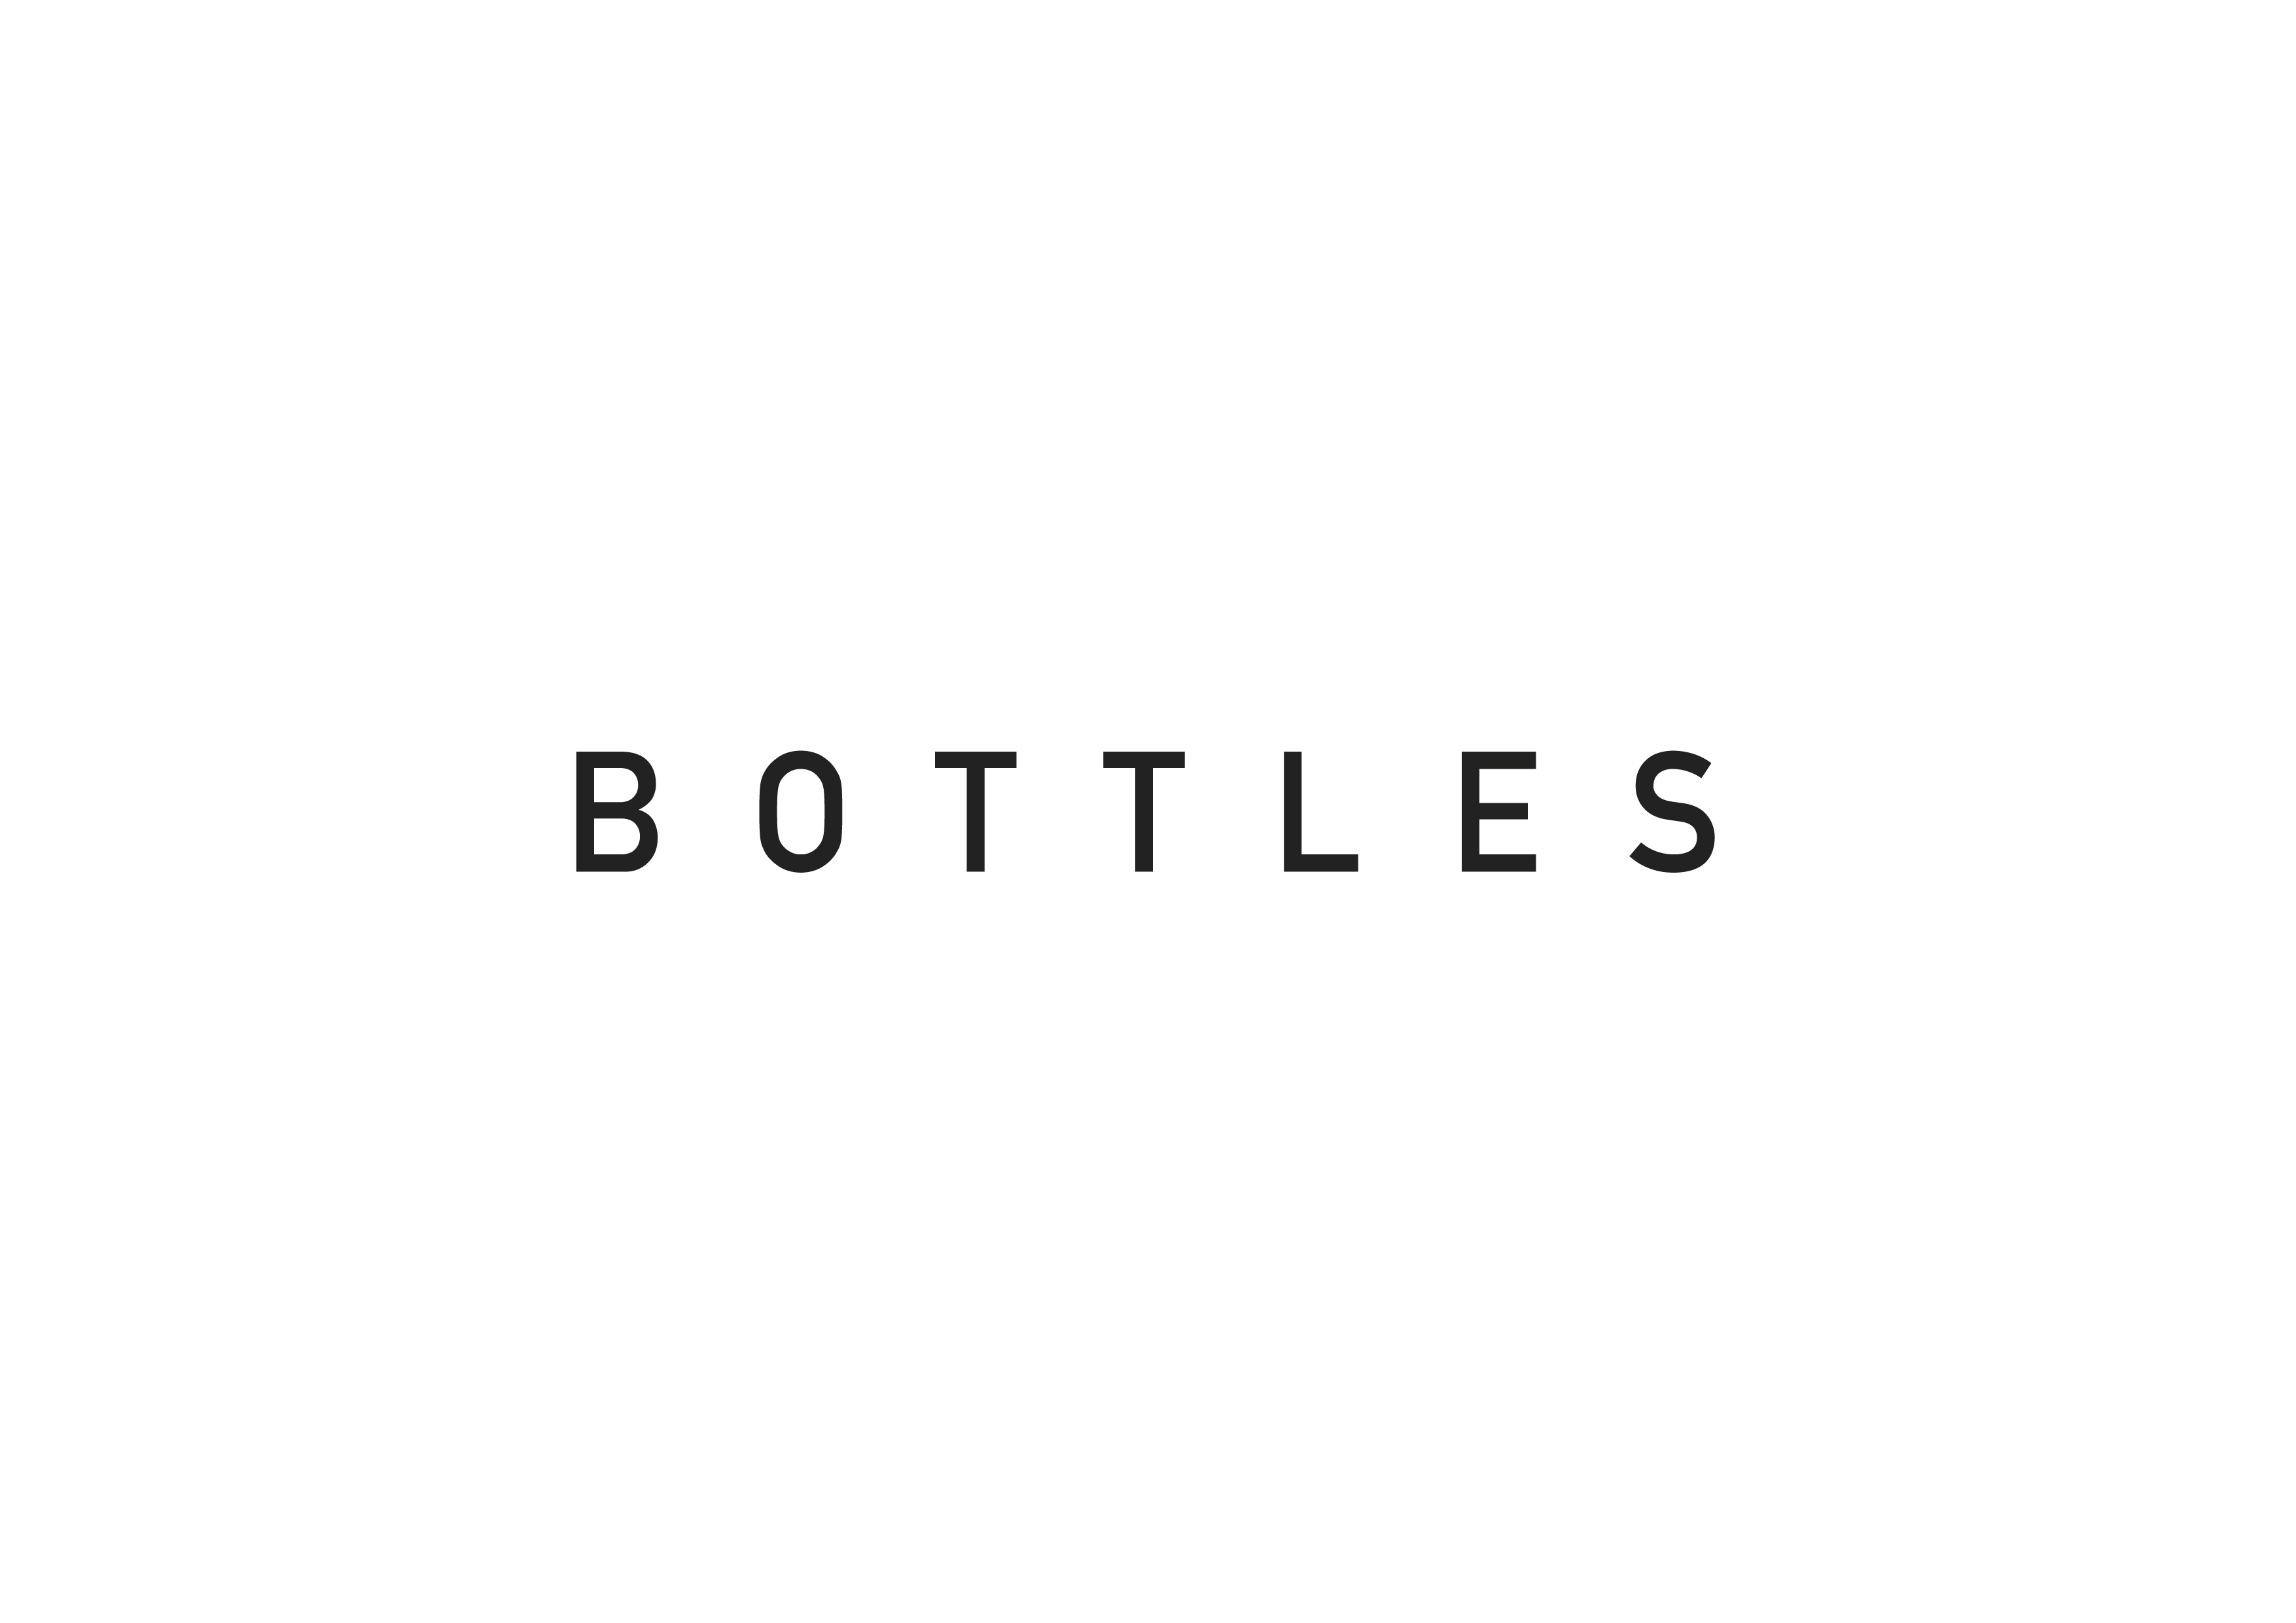 Bottles_M3S